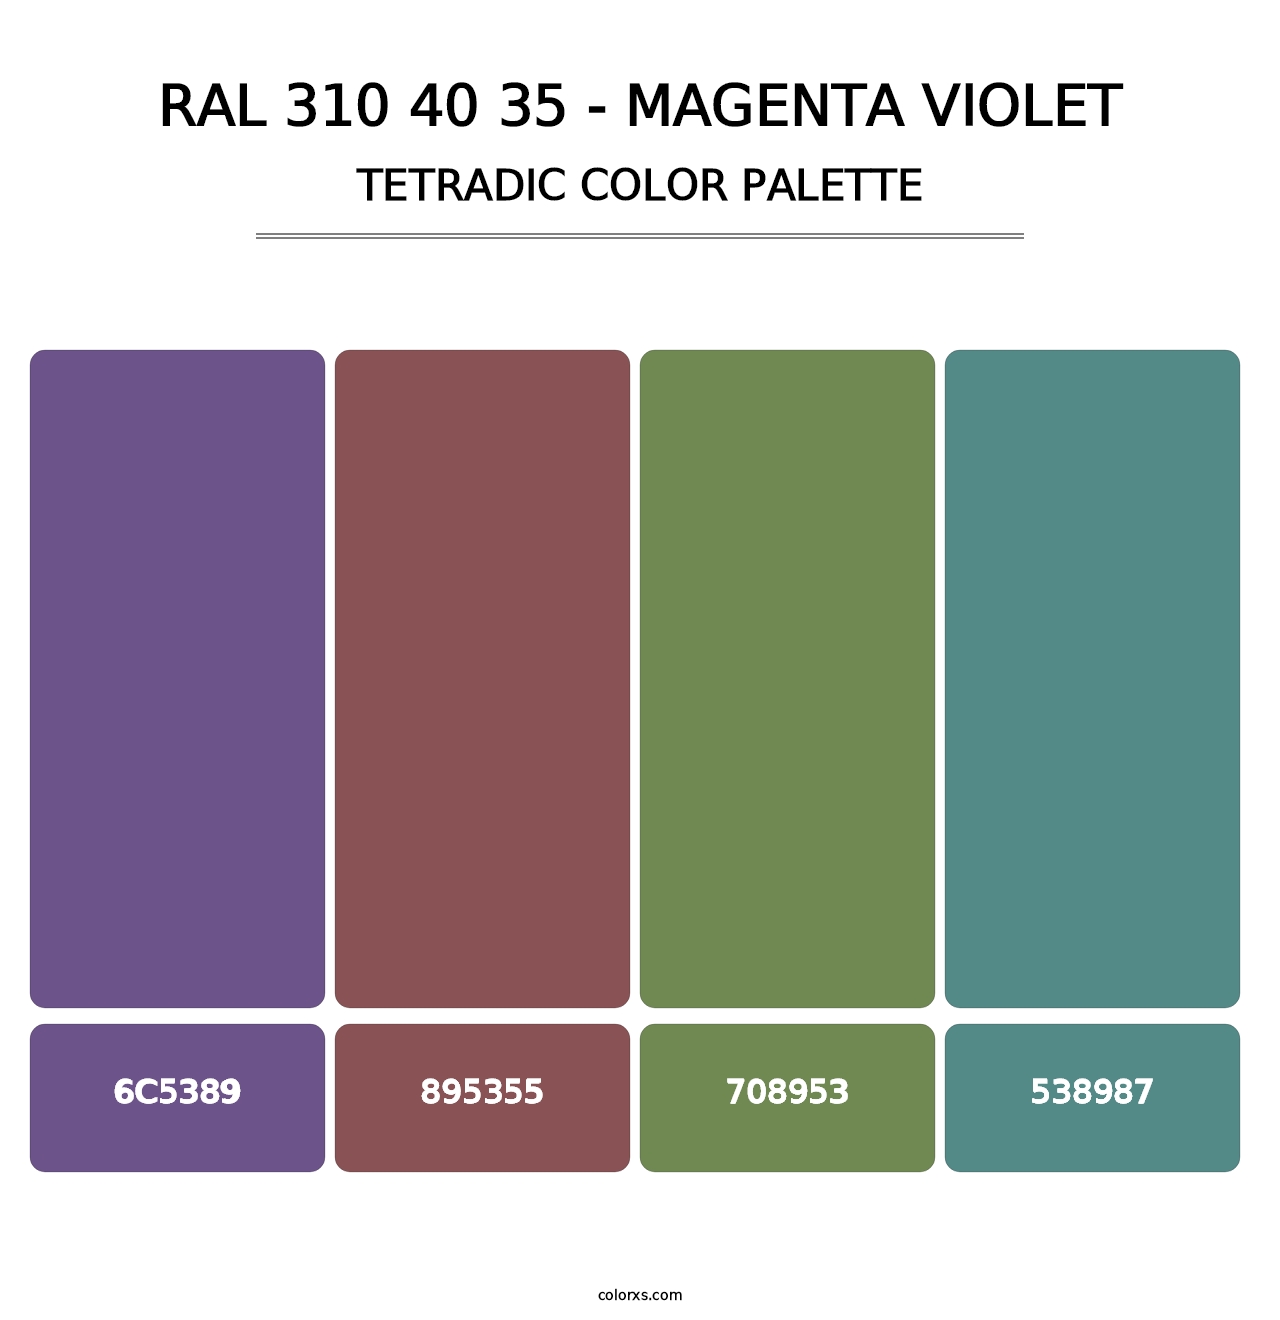 RAL 310 40 35 - Magenta Violet - Tetradic Color Palette